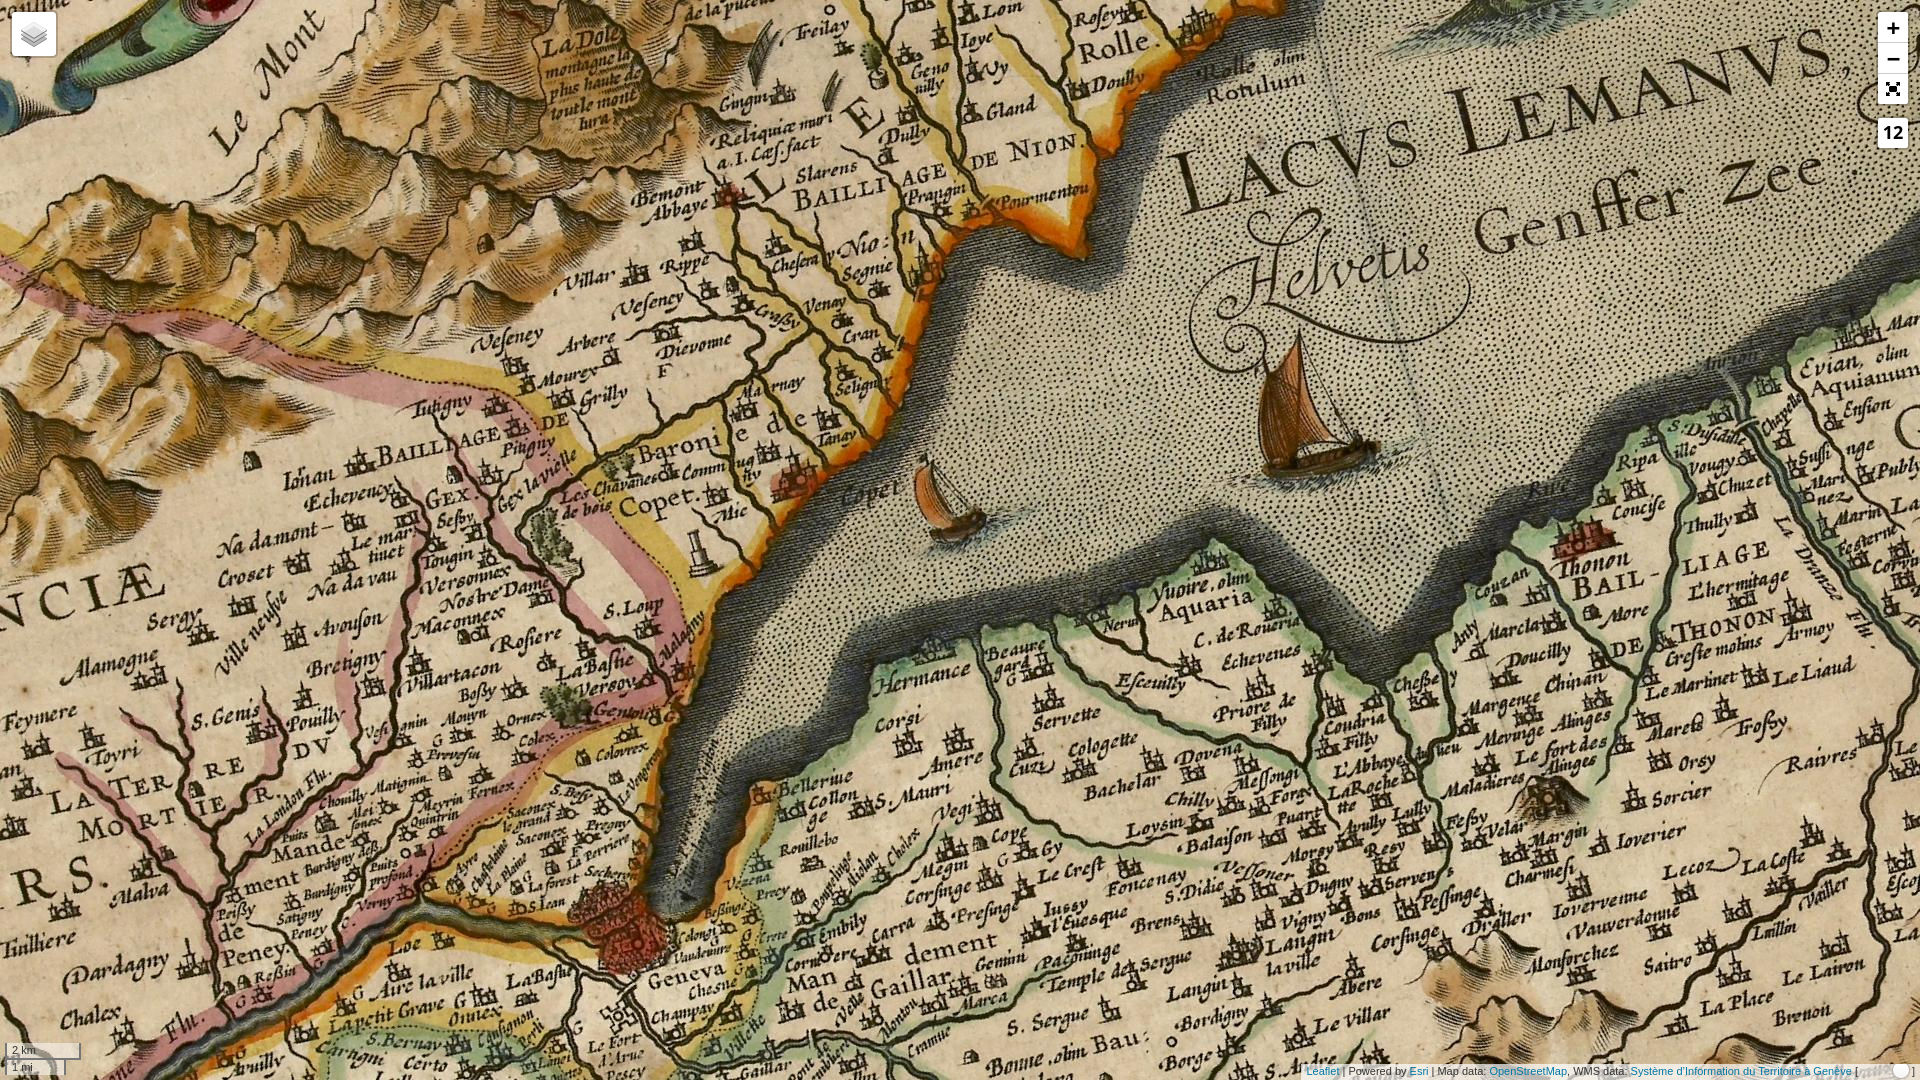 Kantonskarte des Josse II de Hondt (1630)